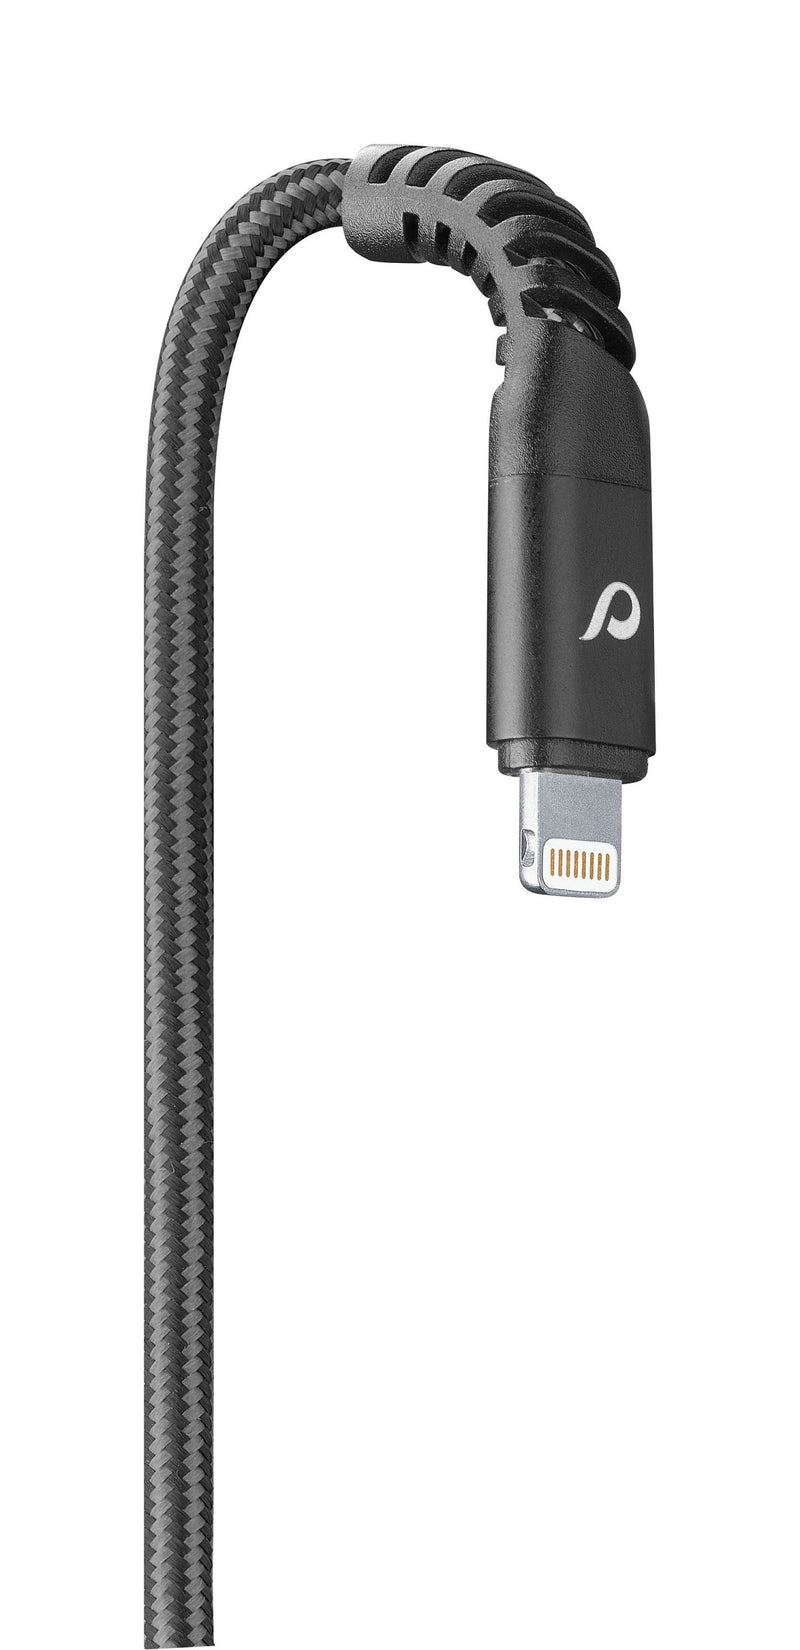 CellularLine Tetra Force ladekabel USB-C til Lightning 1,2m - Svart